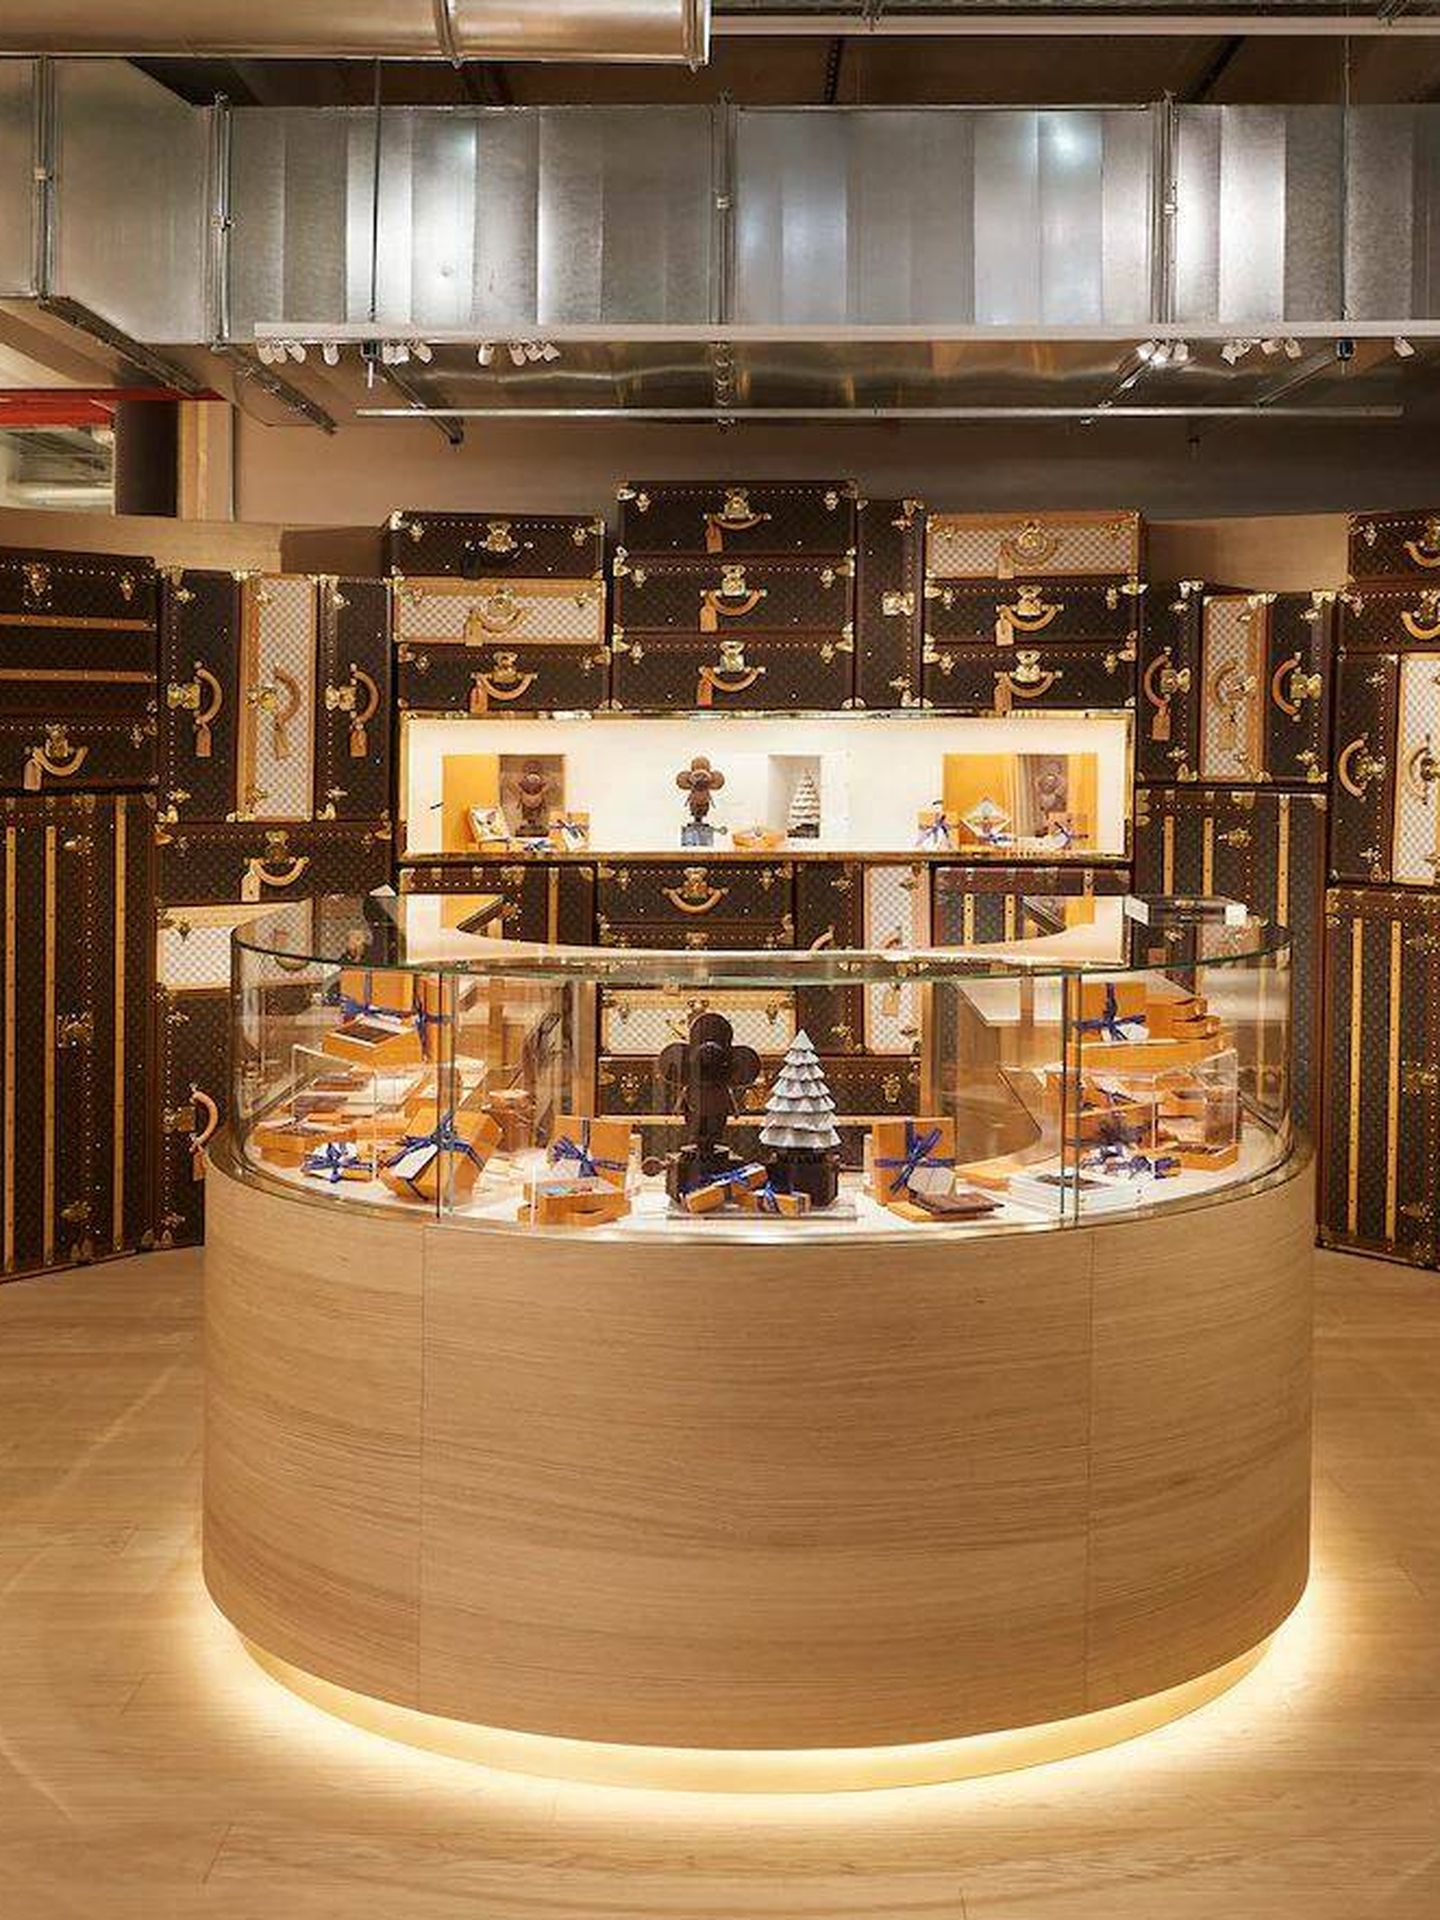 El increíble mostrador de la chocolatería. (Louis Vuitton)